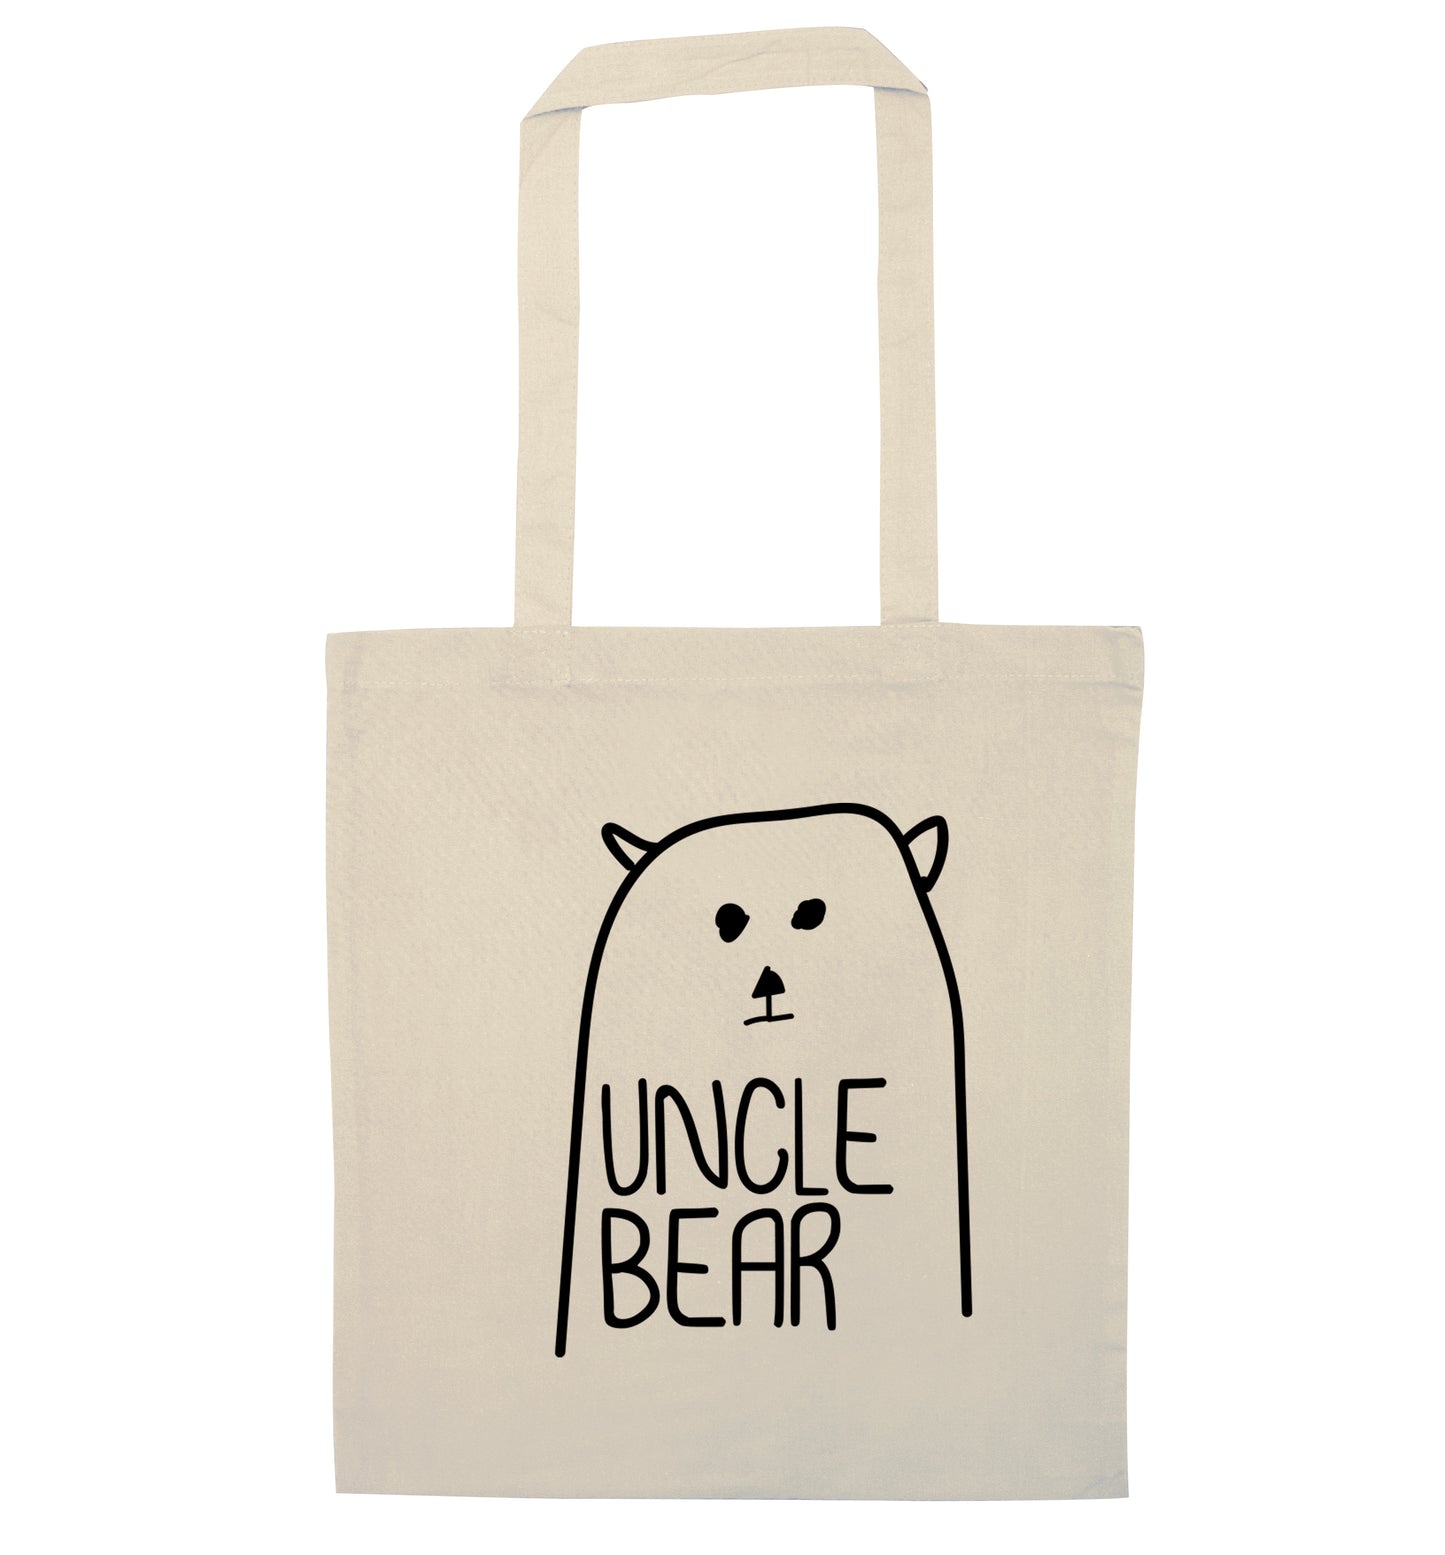 Uncle bear natural tote bag